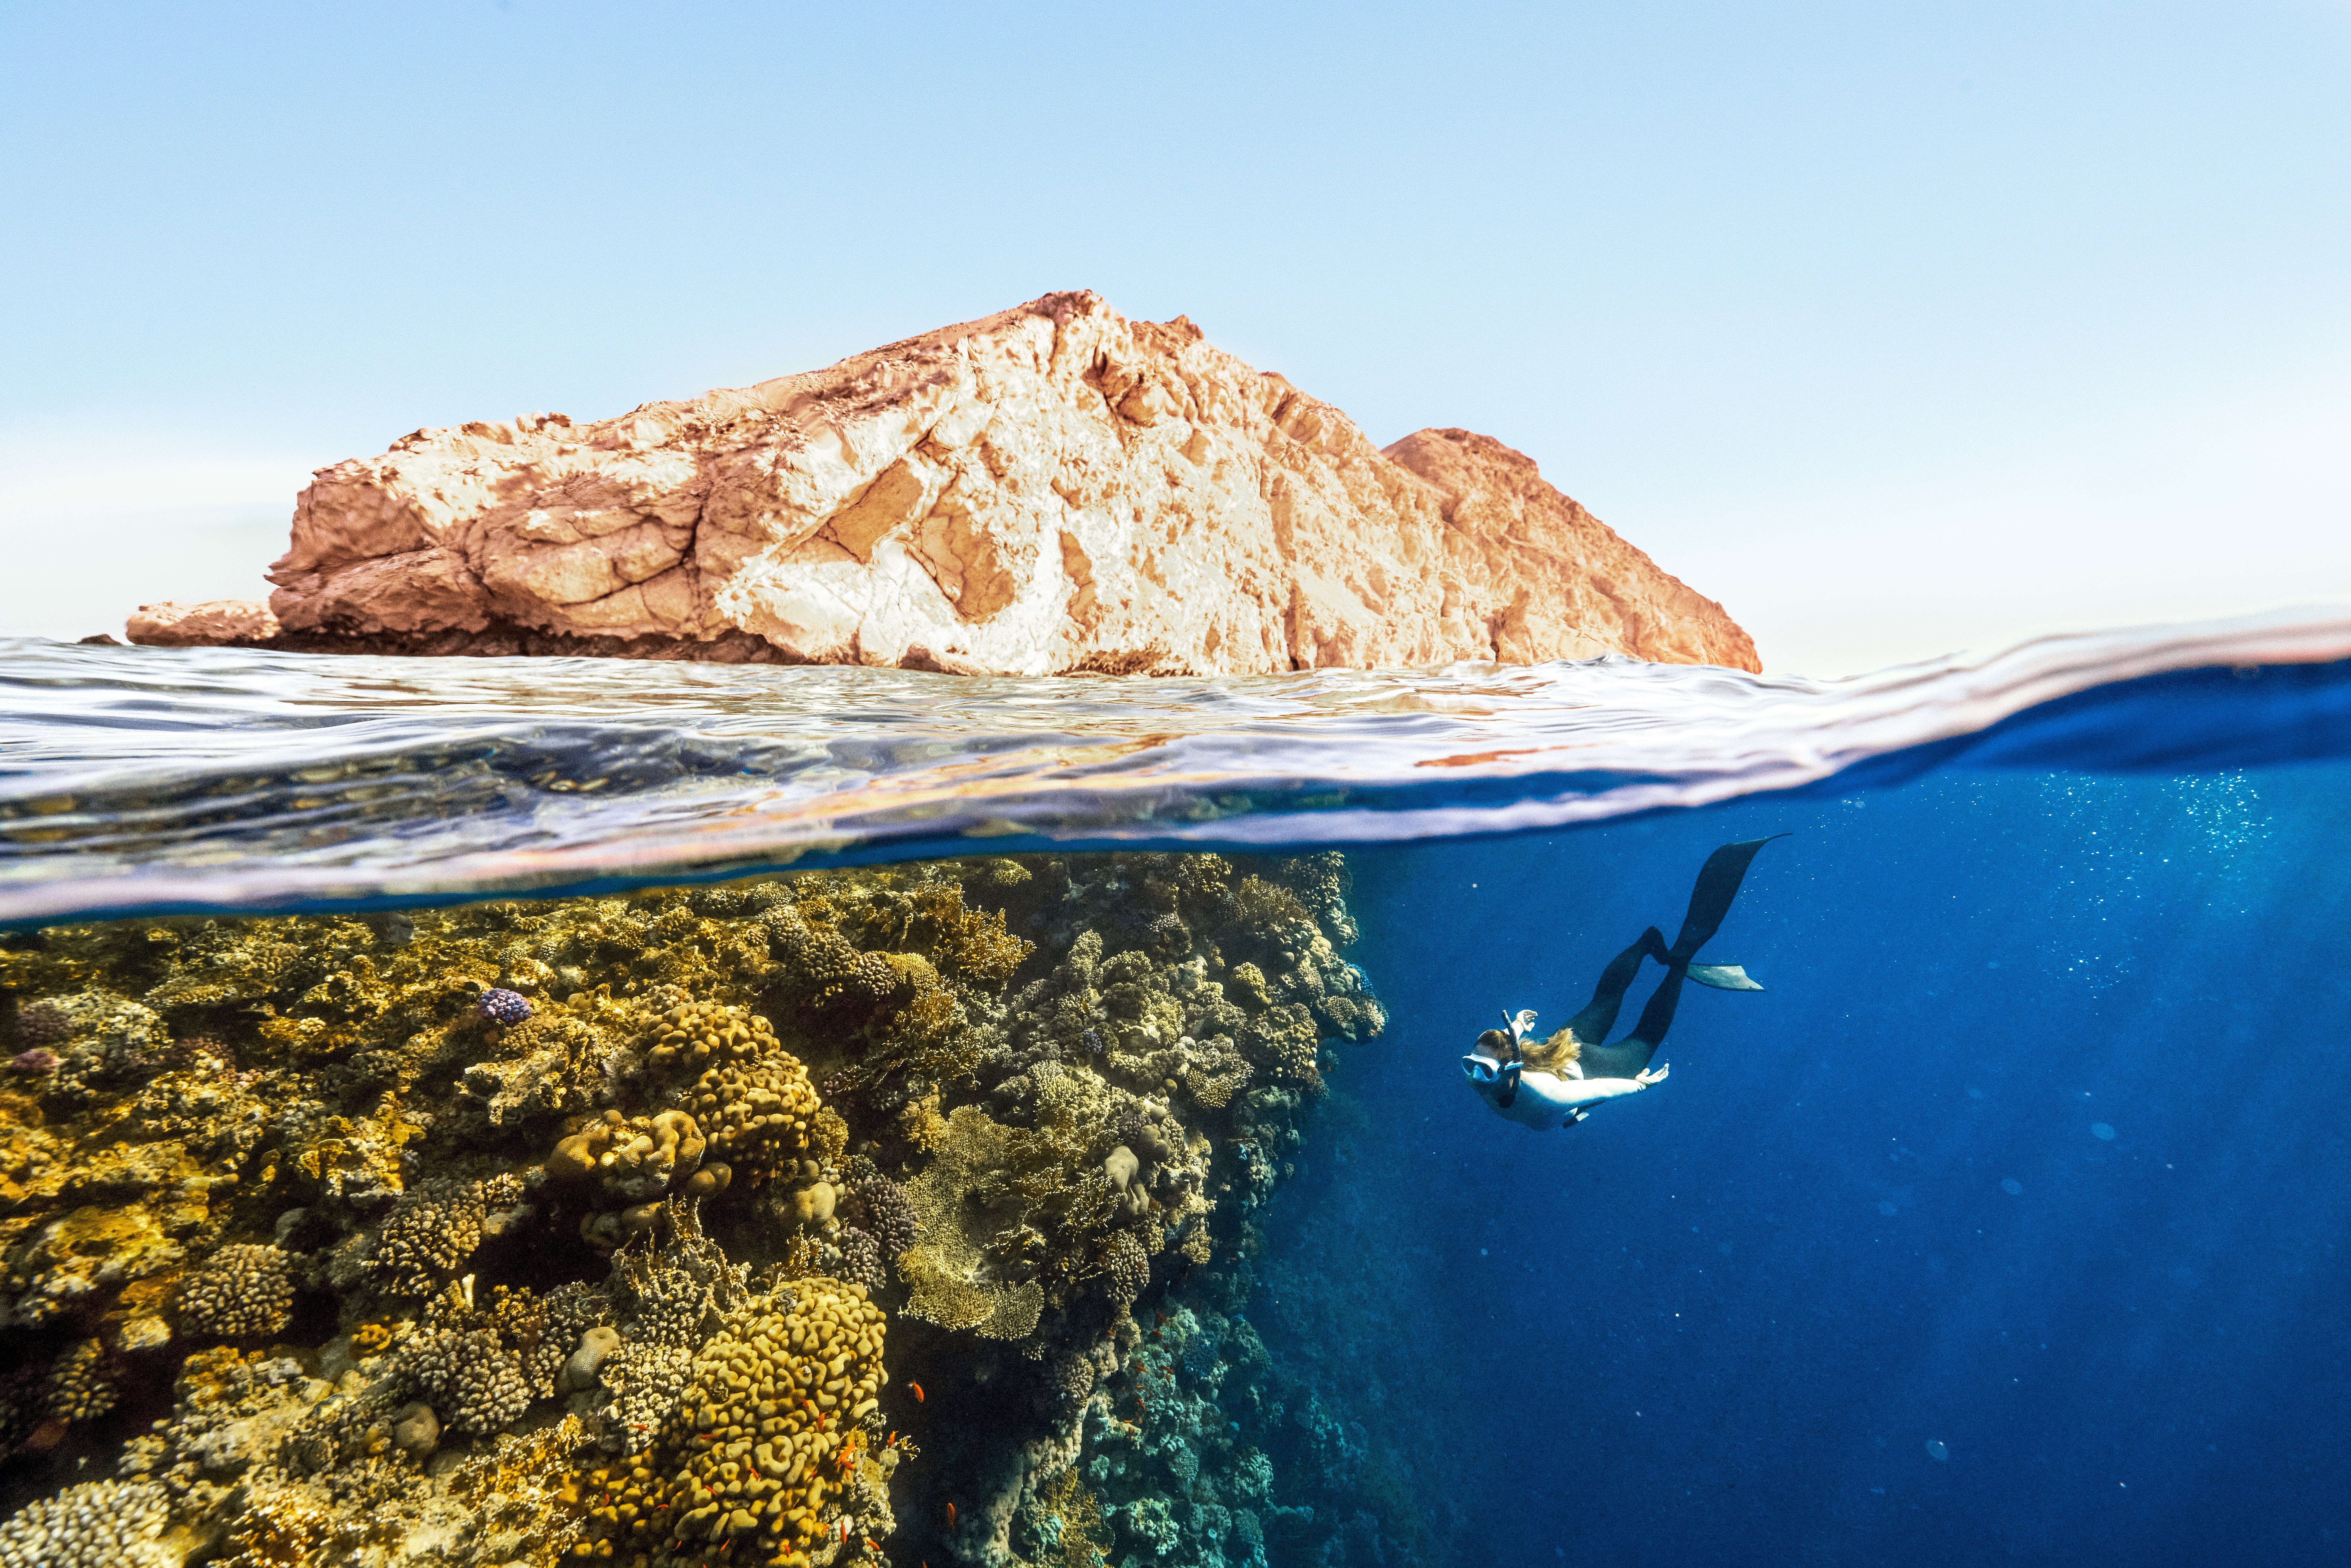 A scuba diver explores ocean ecosystems off the coast of Saudi Arabia